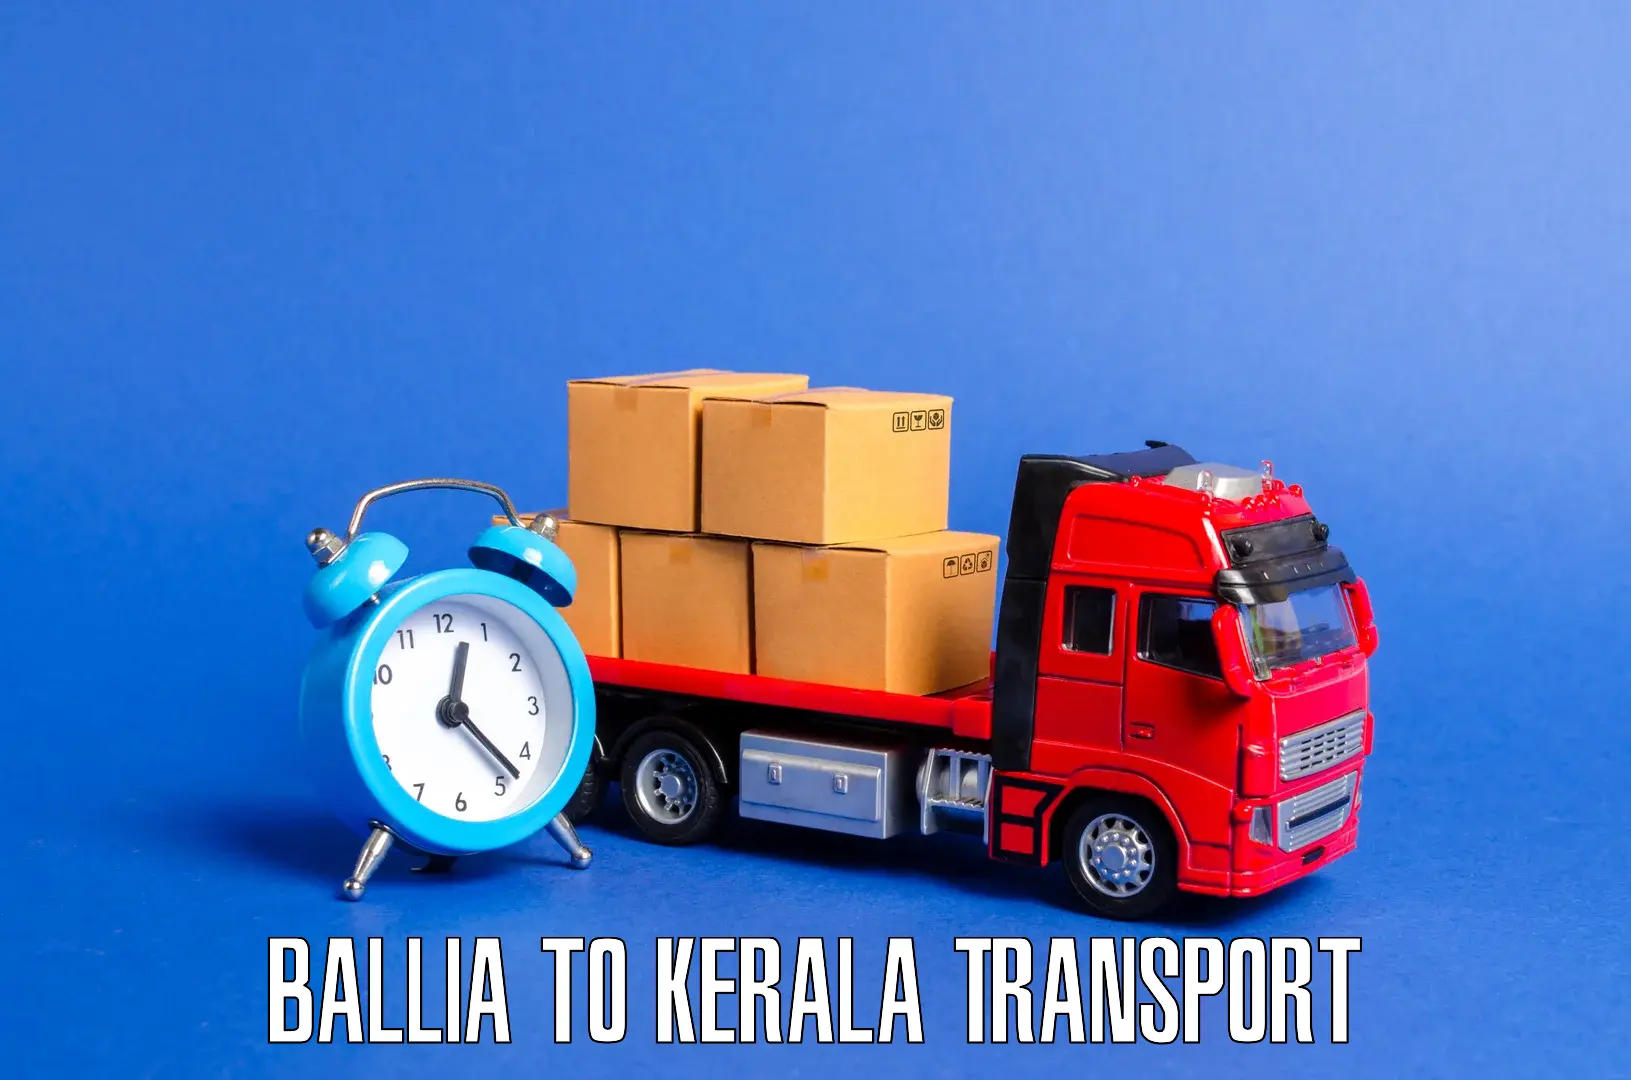 Daily transport service Ballia to Alappuzha